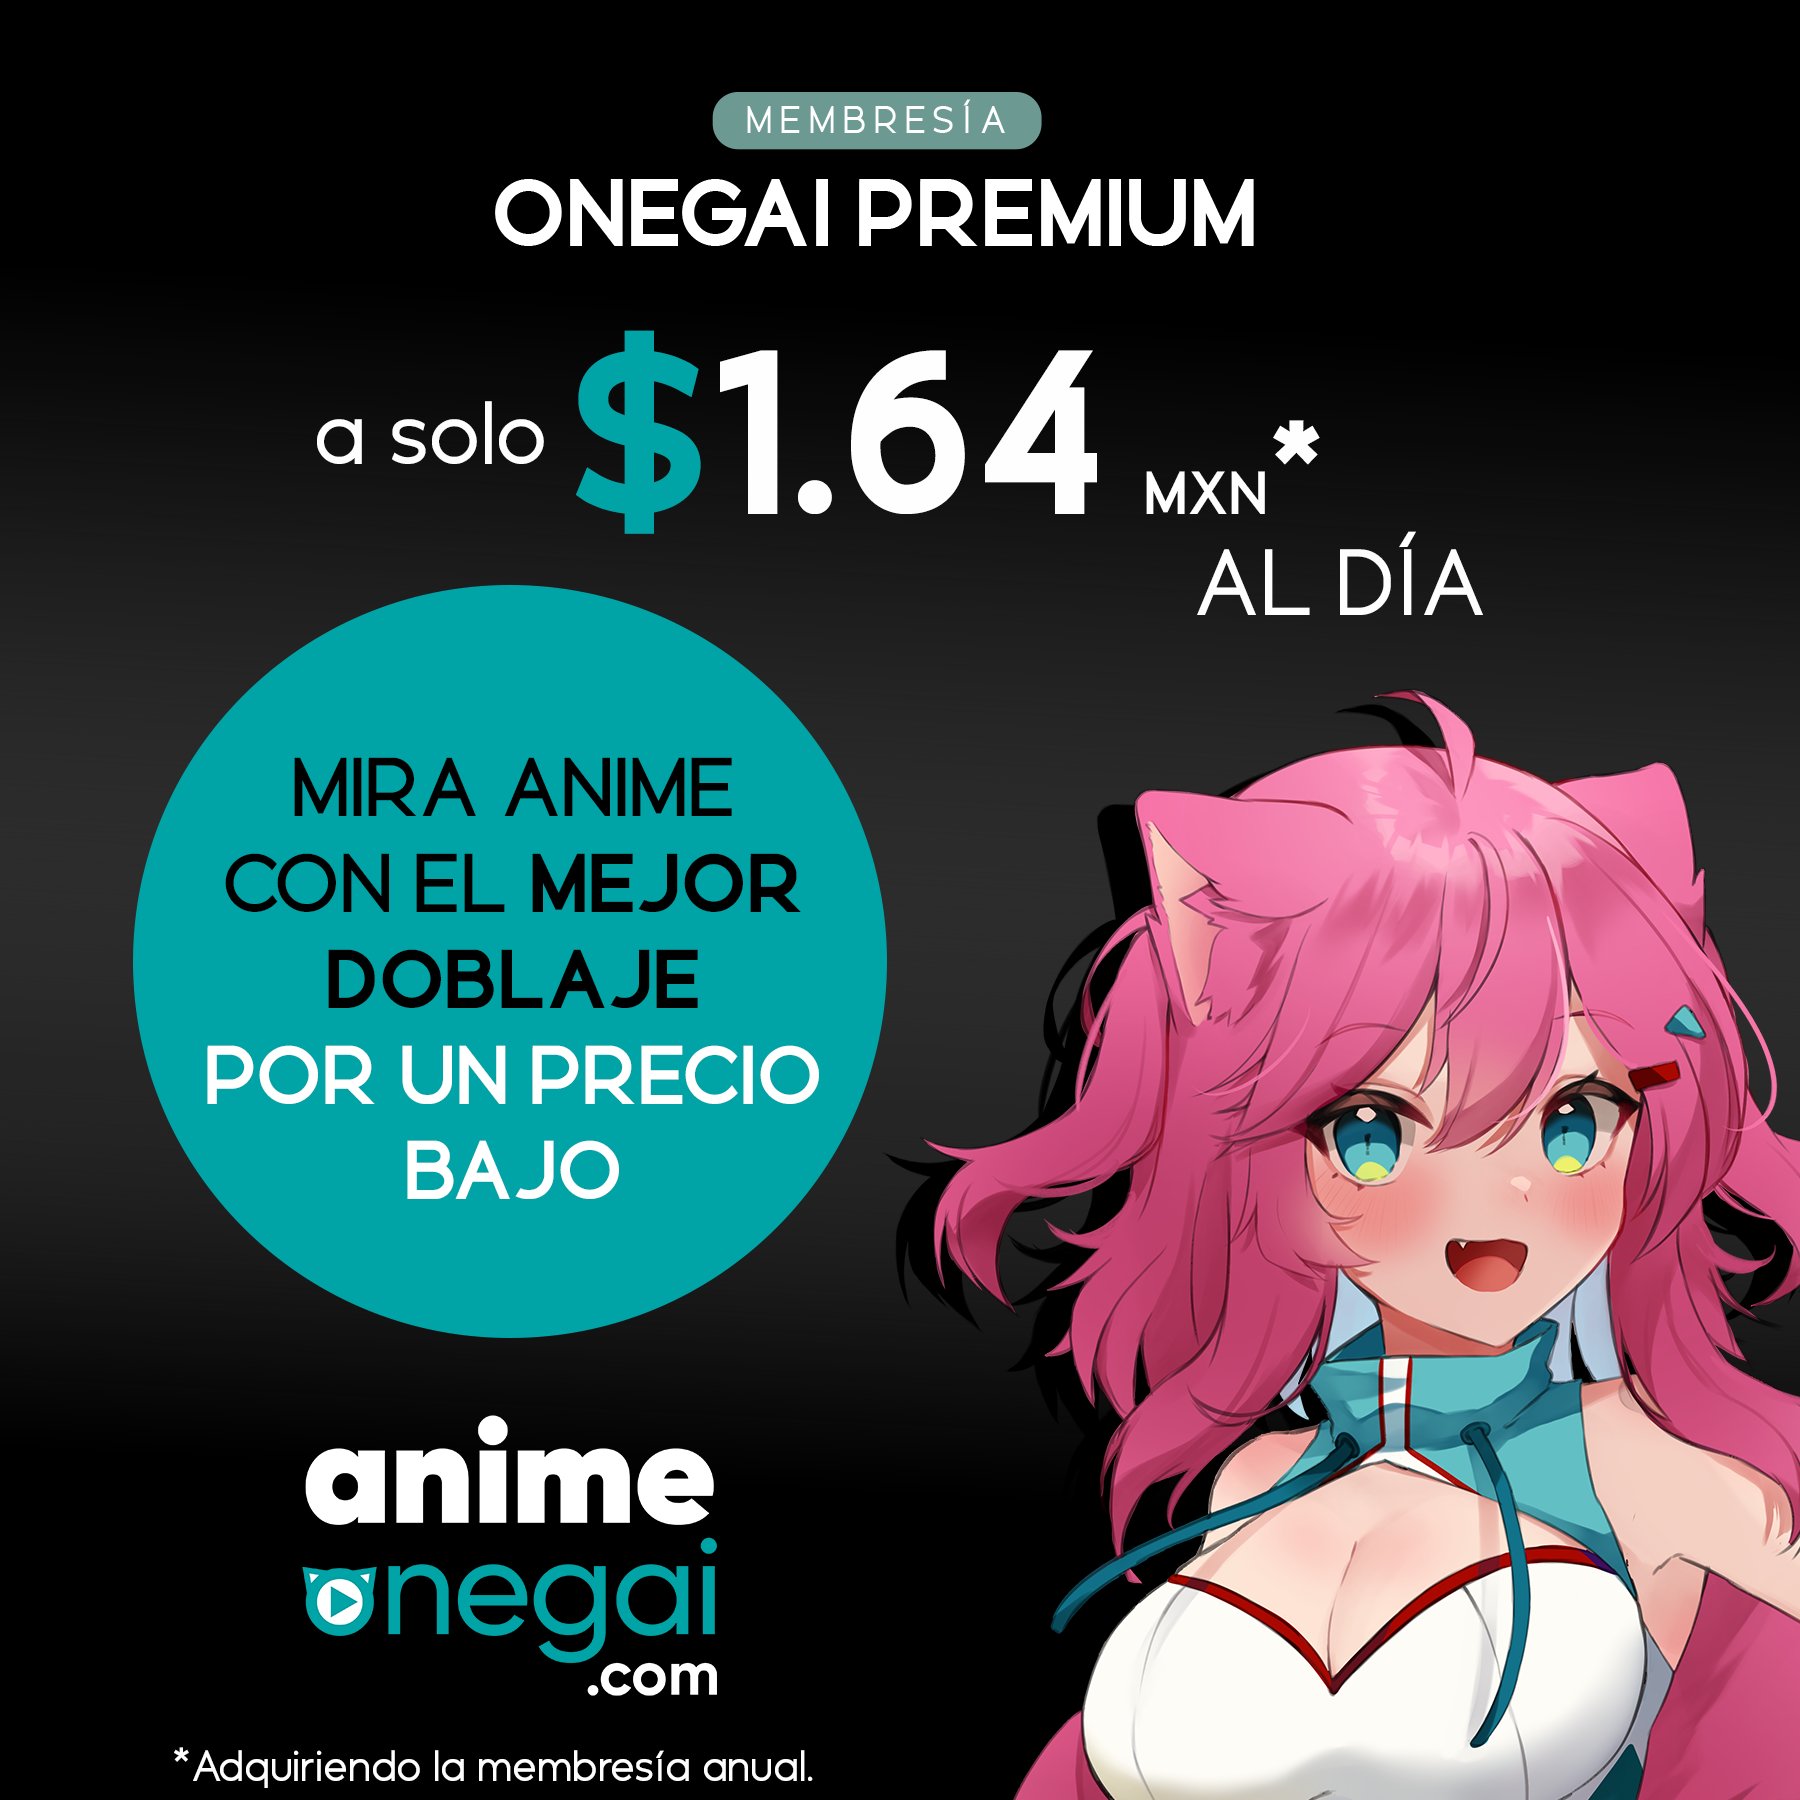 Anime Onegai Brasil on X: Está no ar a sua nova revista virtual com os  lançamentos da semana da  Quais títulos vocês estão  acompanhando? #anime #animesnobrasil #animedublado   / X